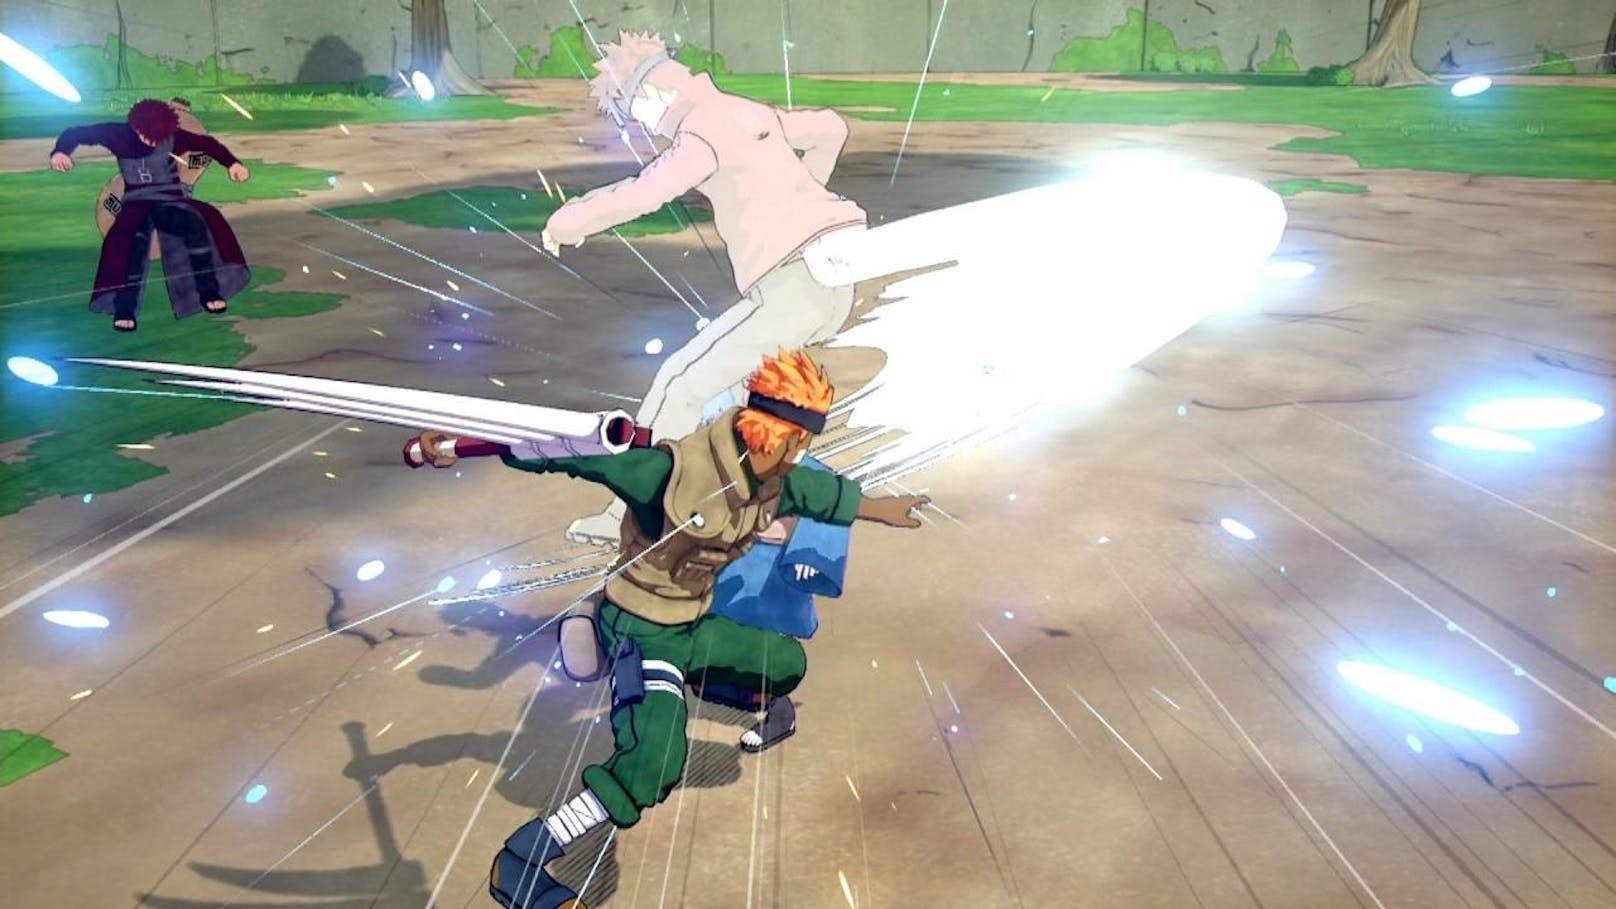 Bis zum 31. Januar 2019 können Spieler kostenlos Naruto to Boruto: Shinobi Striker auf der PlayStation 4 testen. Diese Version bietet Zugriff auf das Tutorial sowie den Schnellspiel- und Ninja-League-Modus, um online gegen andere anzutreten. Neben den vier spielbaren Charakteren Naruto, Sasuke, Sakura und Yamato, kann auch ein eigener Ninja-Avatar erstellt werden. Außerdem wird für alle Spieler der neue Überlebenstrainings-Modus verfügbar sein. Dort treten 6 Spieler an und sammeln Punkte, indem sie die anderen eliminieren. Das Spiel endet nach einer bestimmten Zeit oder wenn eine bestimmte Punktzahl erreicht wurde.